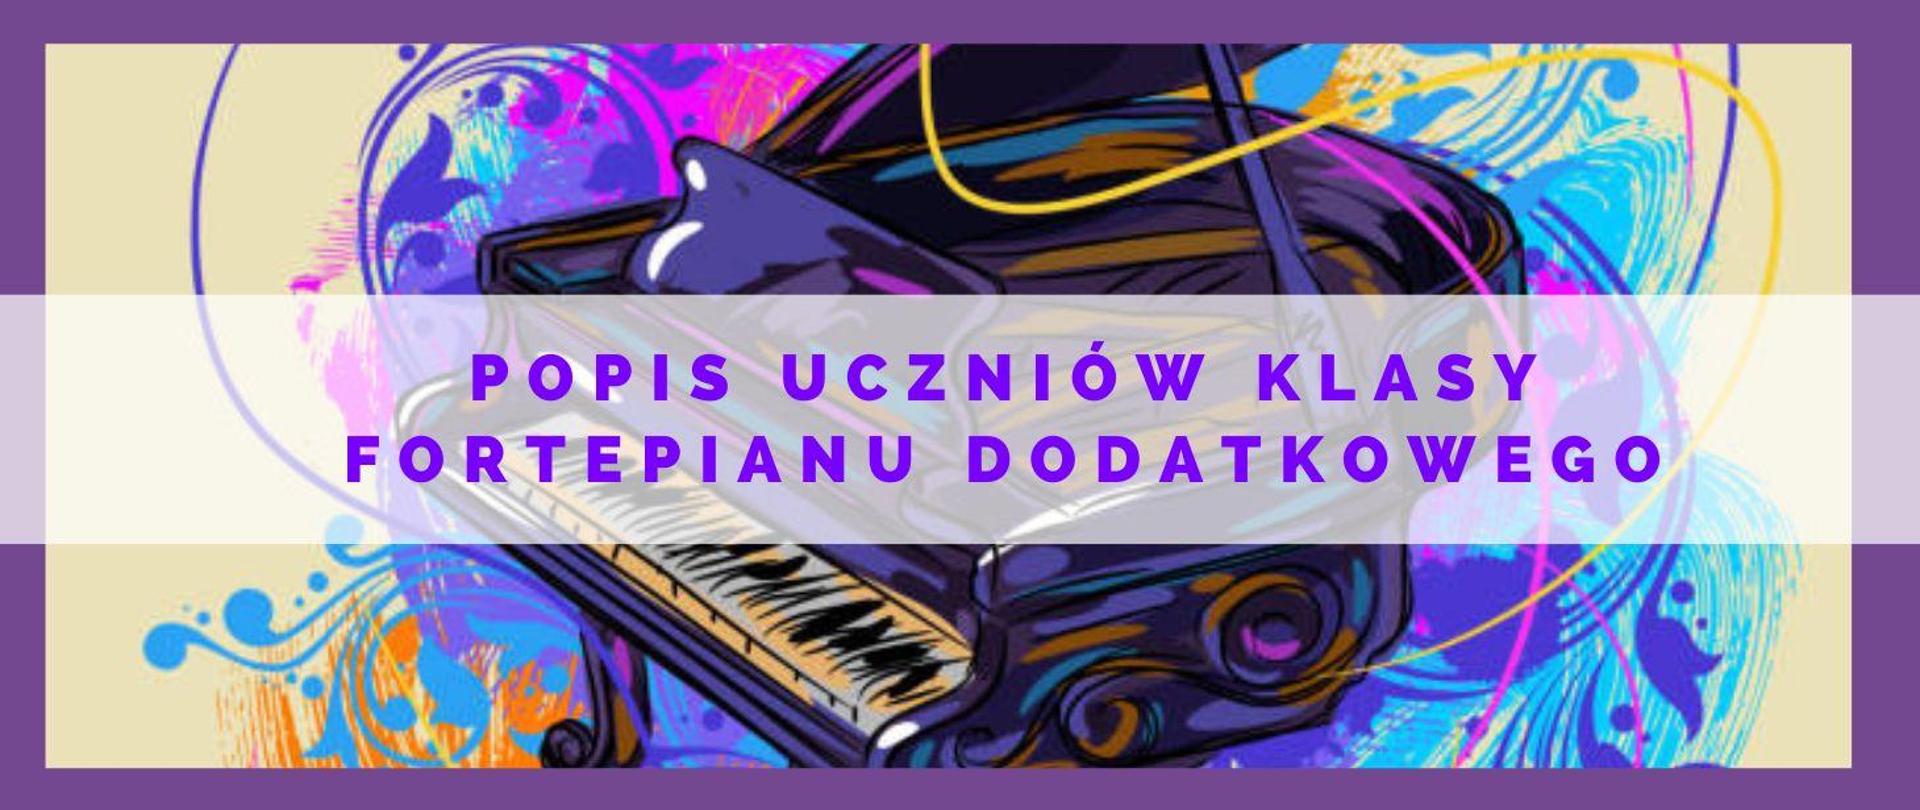 kolorowa grafika fortepianu w kolorze ciemnego fioletu , naokoło instrumentu w kolorach niebieskiego, żółtego, różu abstrakcyjne plamy. Pośrodku fioletowymi literami nazwa wydarzenia